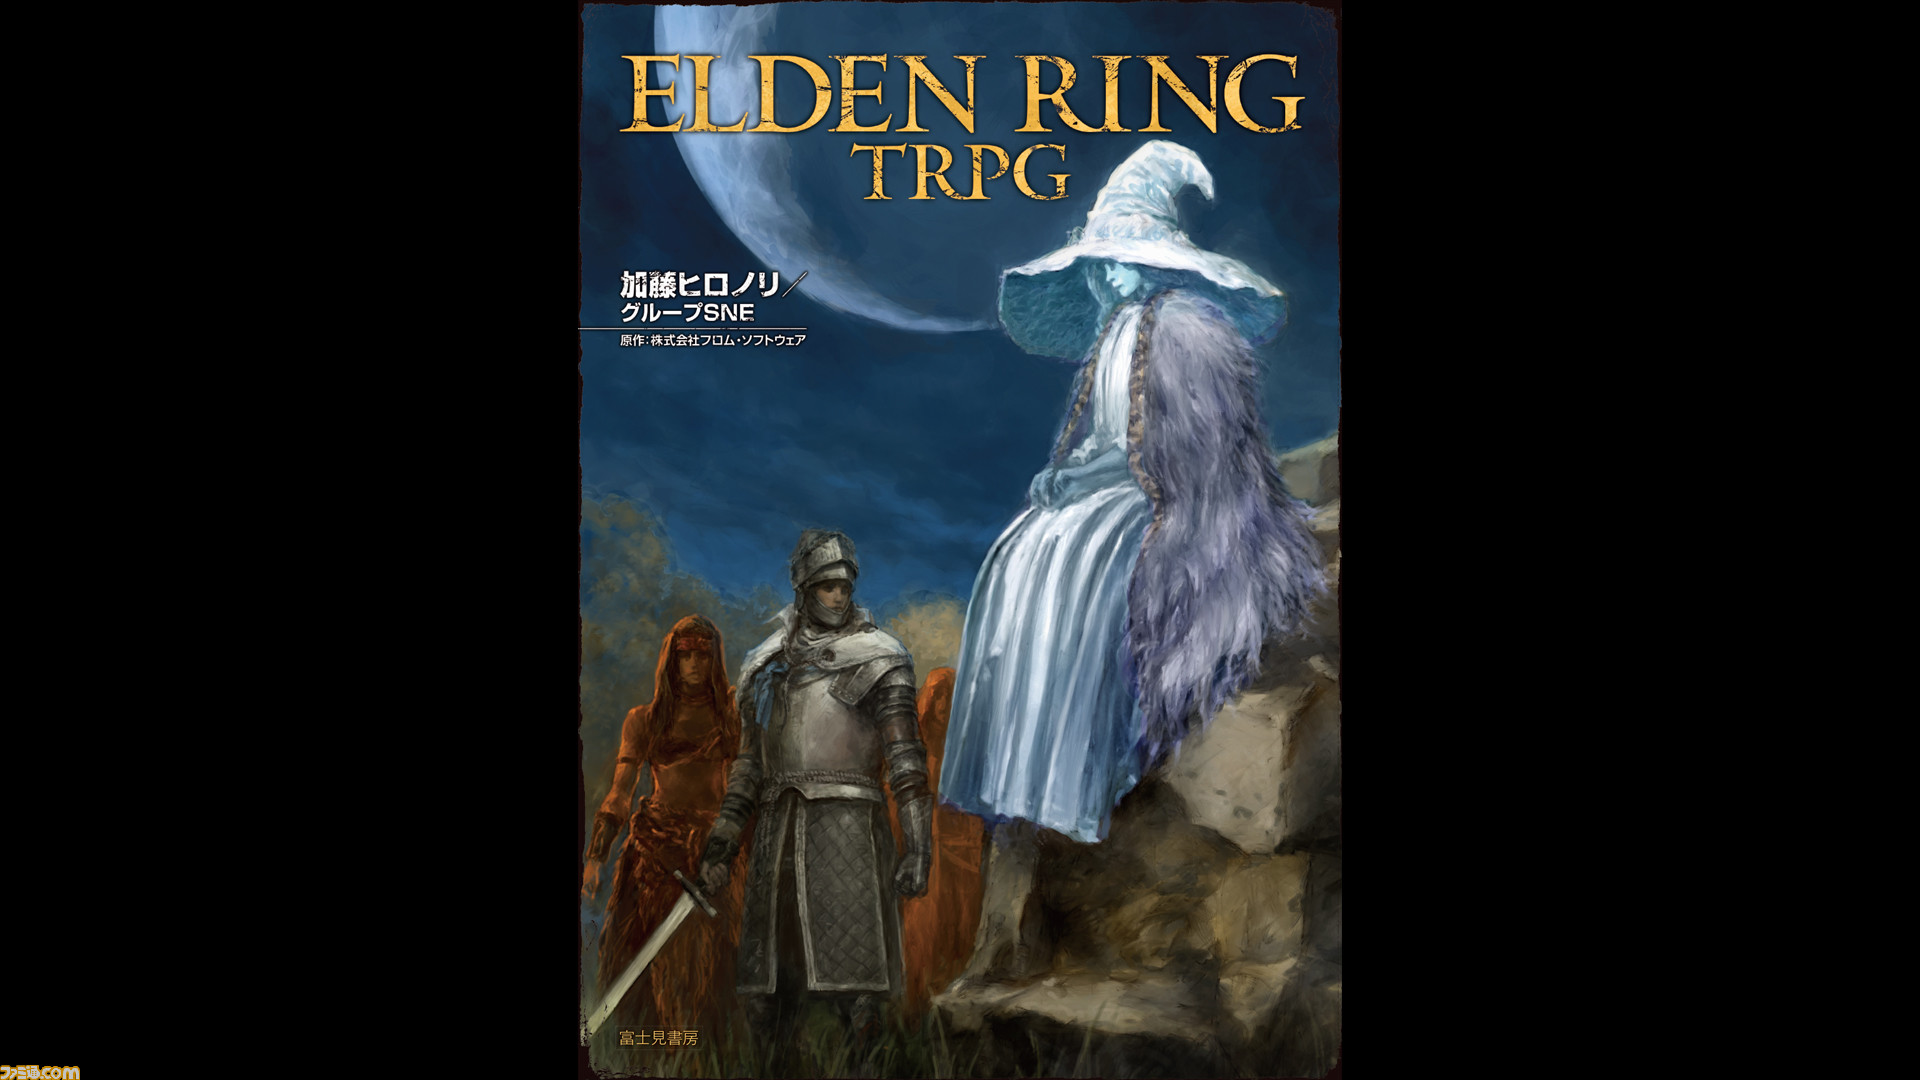 ELDEN RING TRPG』が6月20日刊行。『エルデンリング』の世界をテーブル